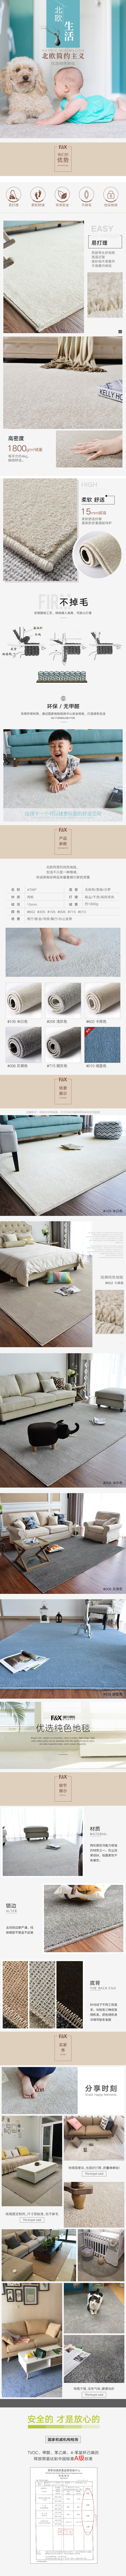 淘宝美工阿雅北欧简约柔软舒适结实耐用地毯作品